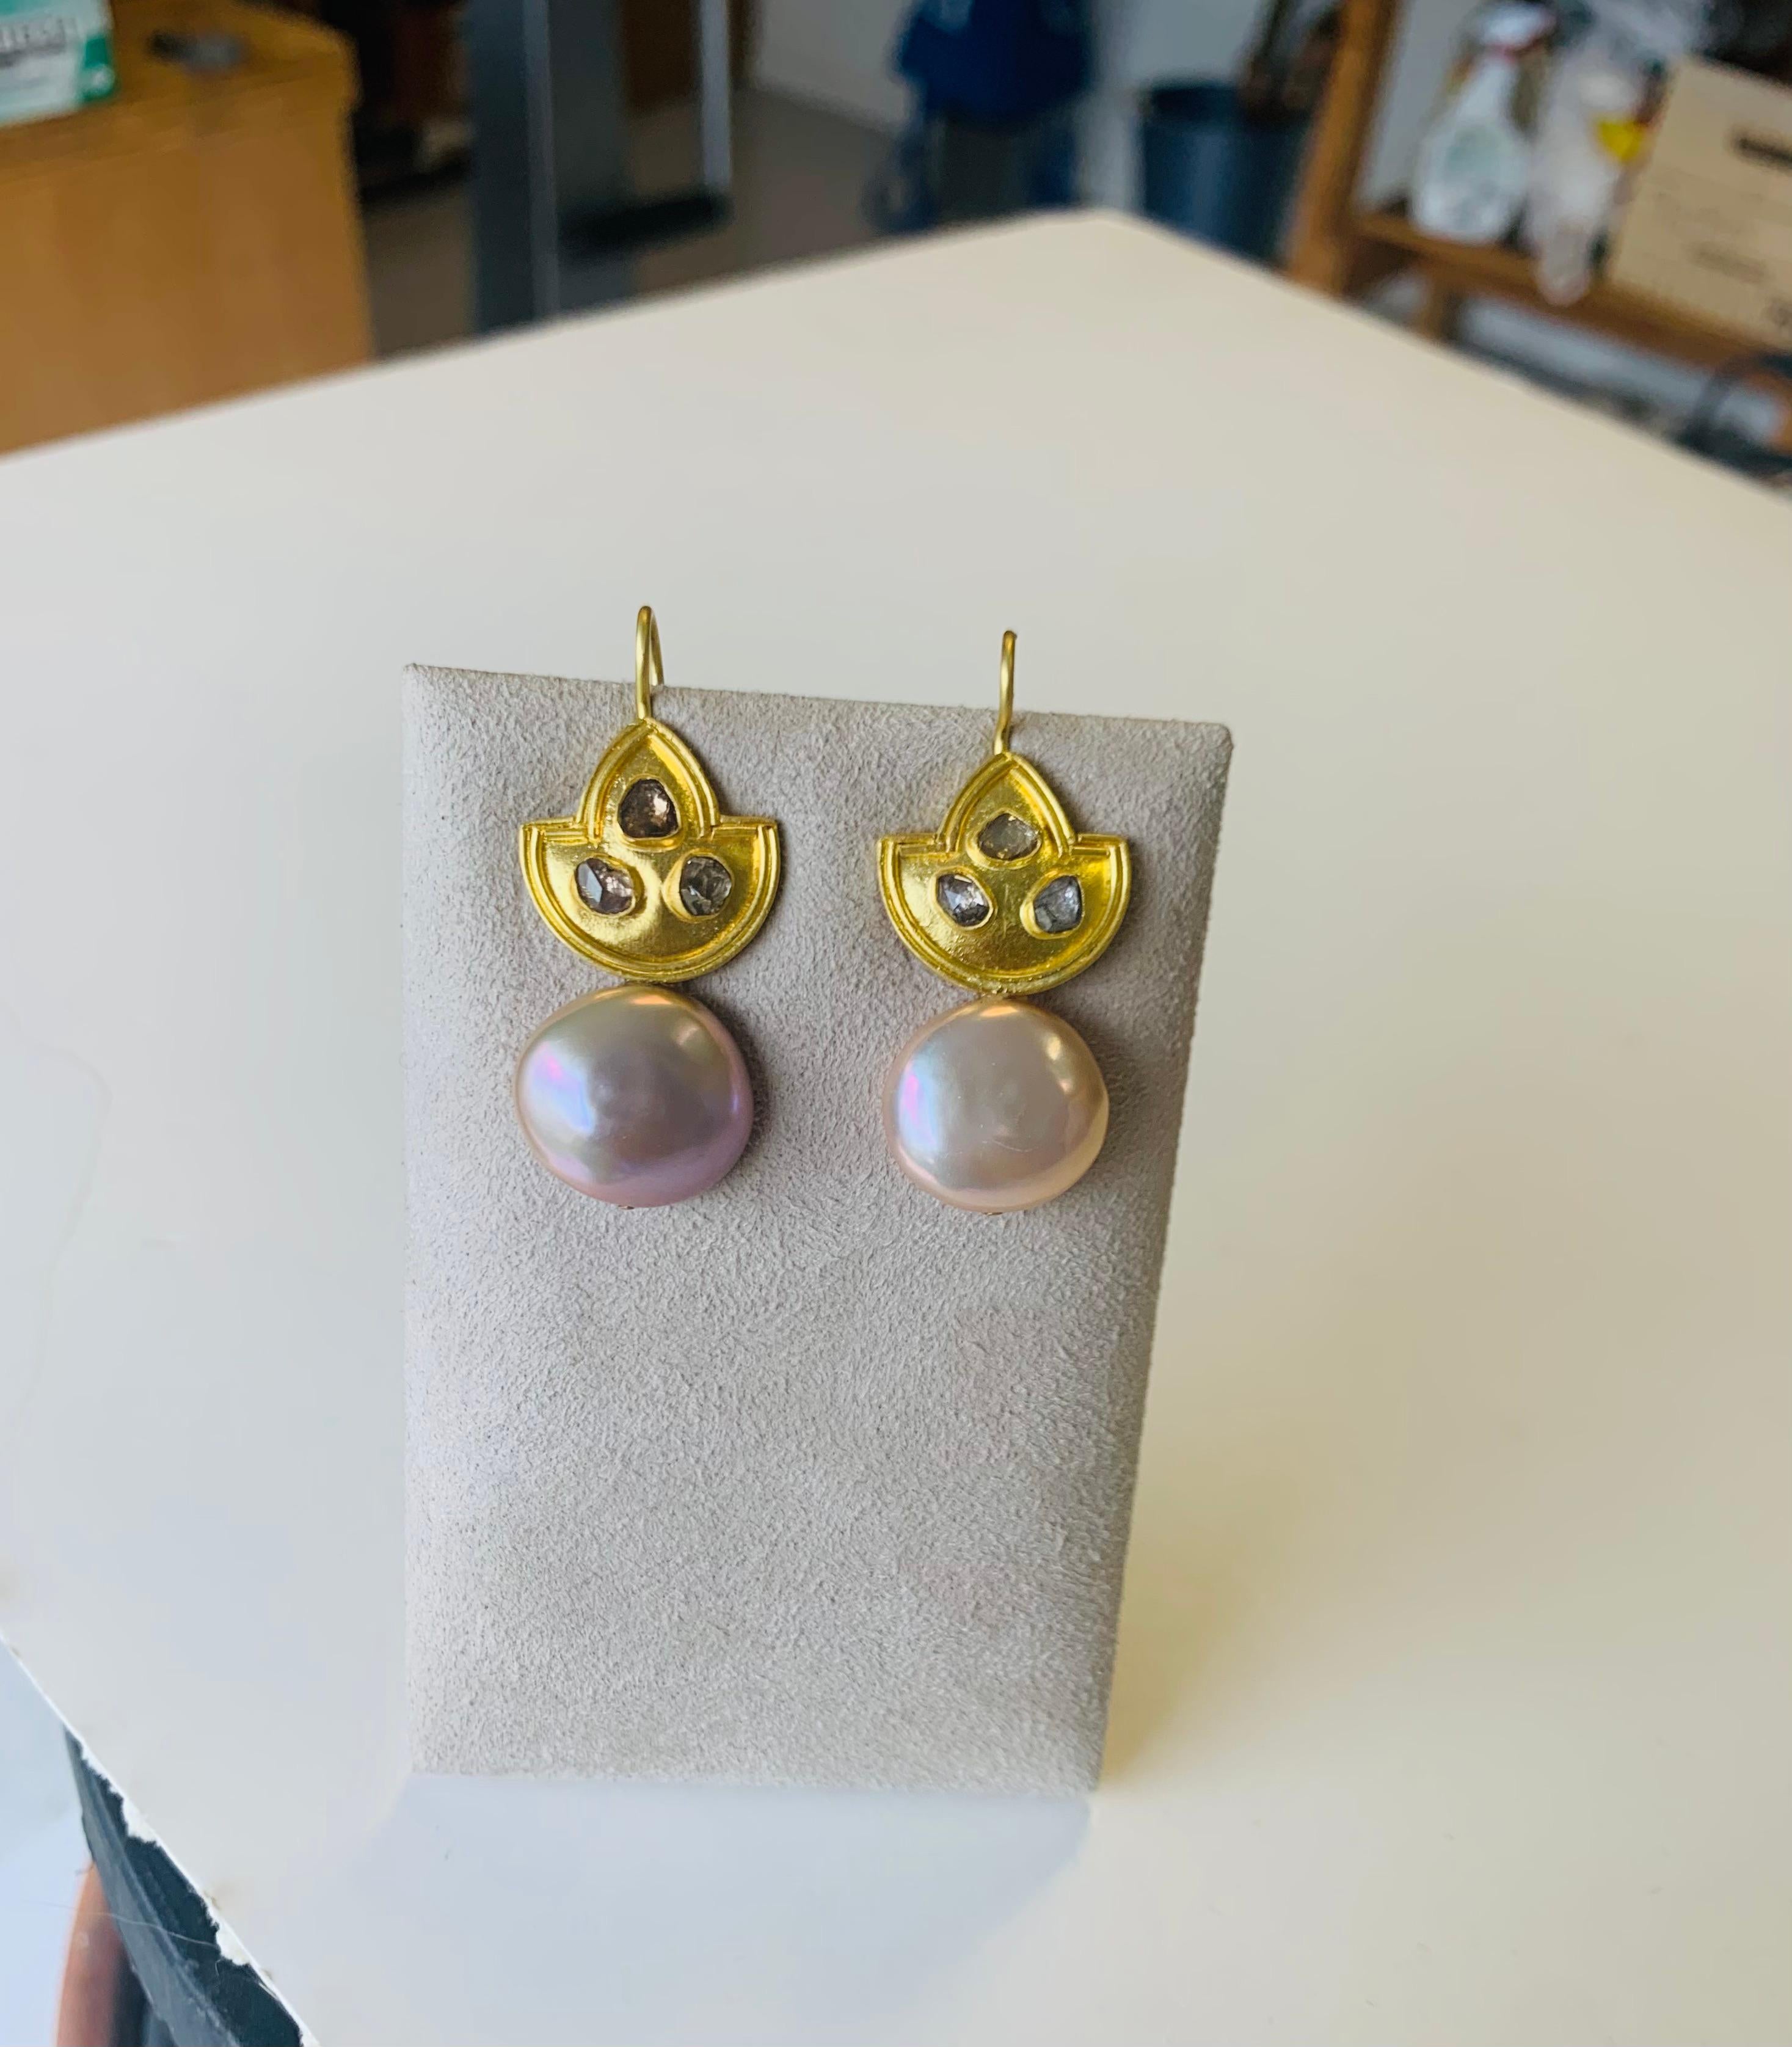 Lotus-Ohrringe aus 22 Karat Gold mit champagnerfarbenen Diamanten mit Antik-Rosenschliff und erröteten Knopfperlen
Diese Ohrringe wurden durch meine vielen Besuche in den Botanischen Gärten der Bronx und deren wunderschöne Seerosenausstellung